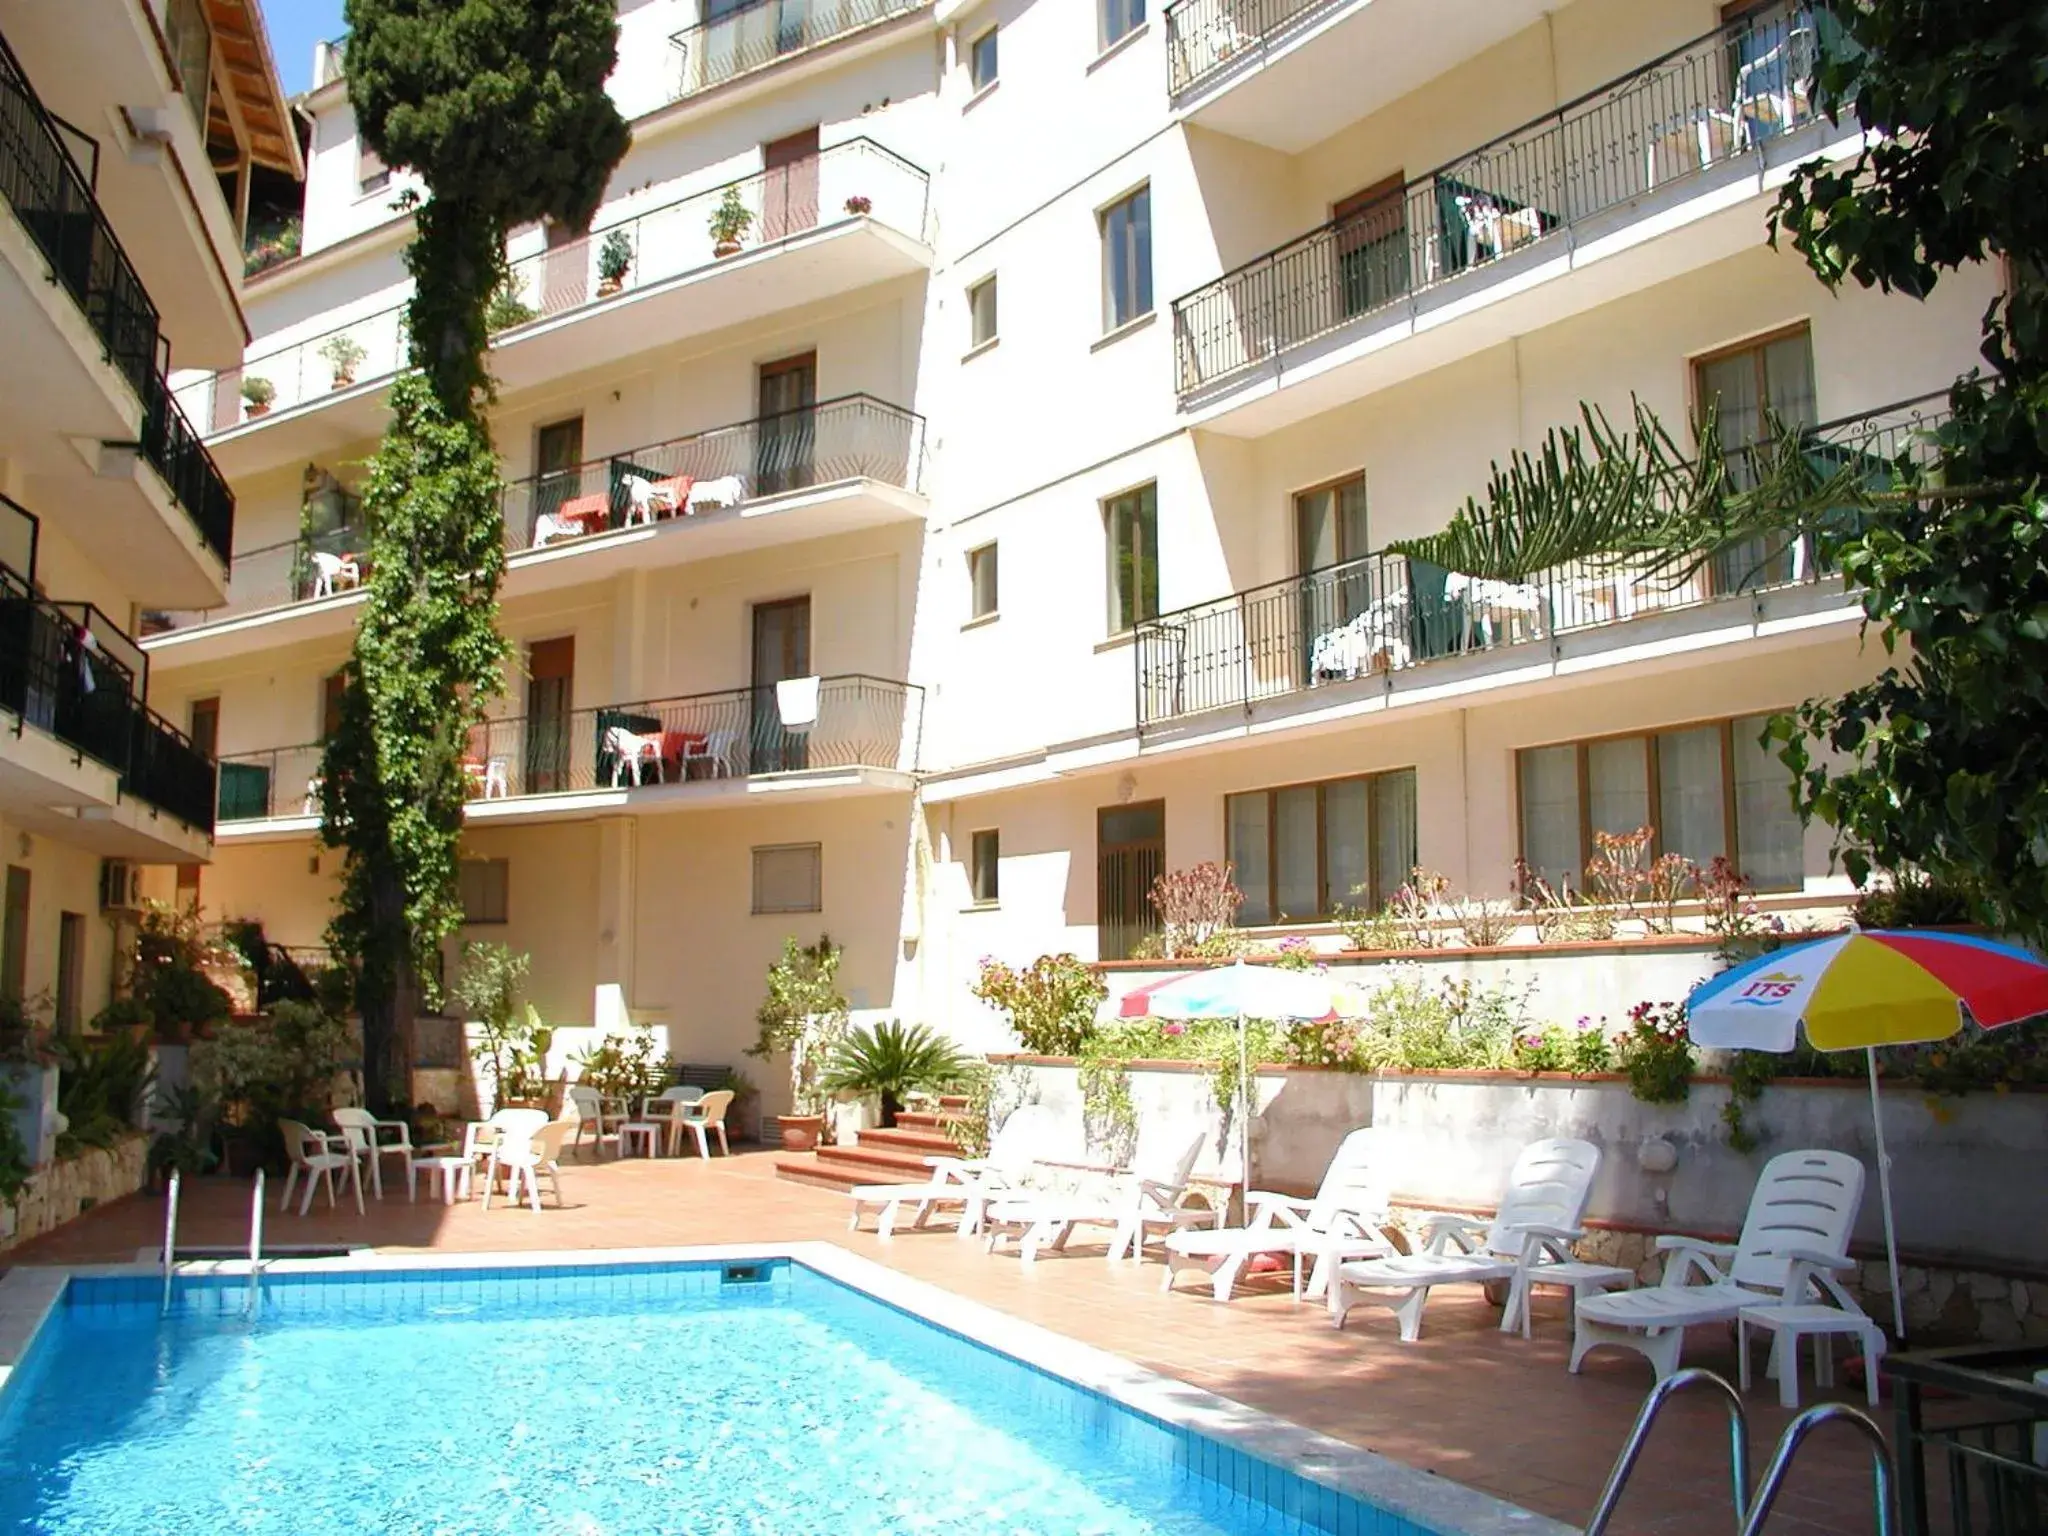 Balcony/Terrace, Swimming Pool in Hotel Soleado